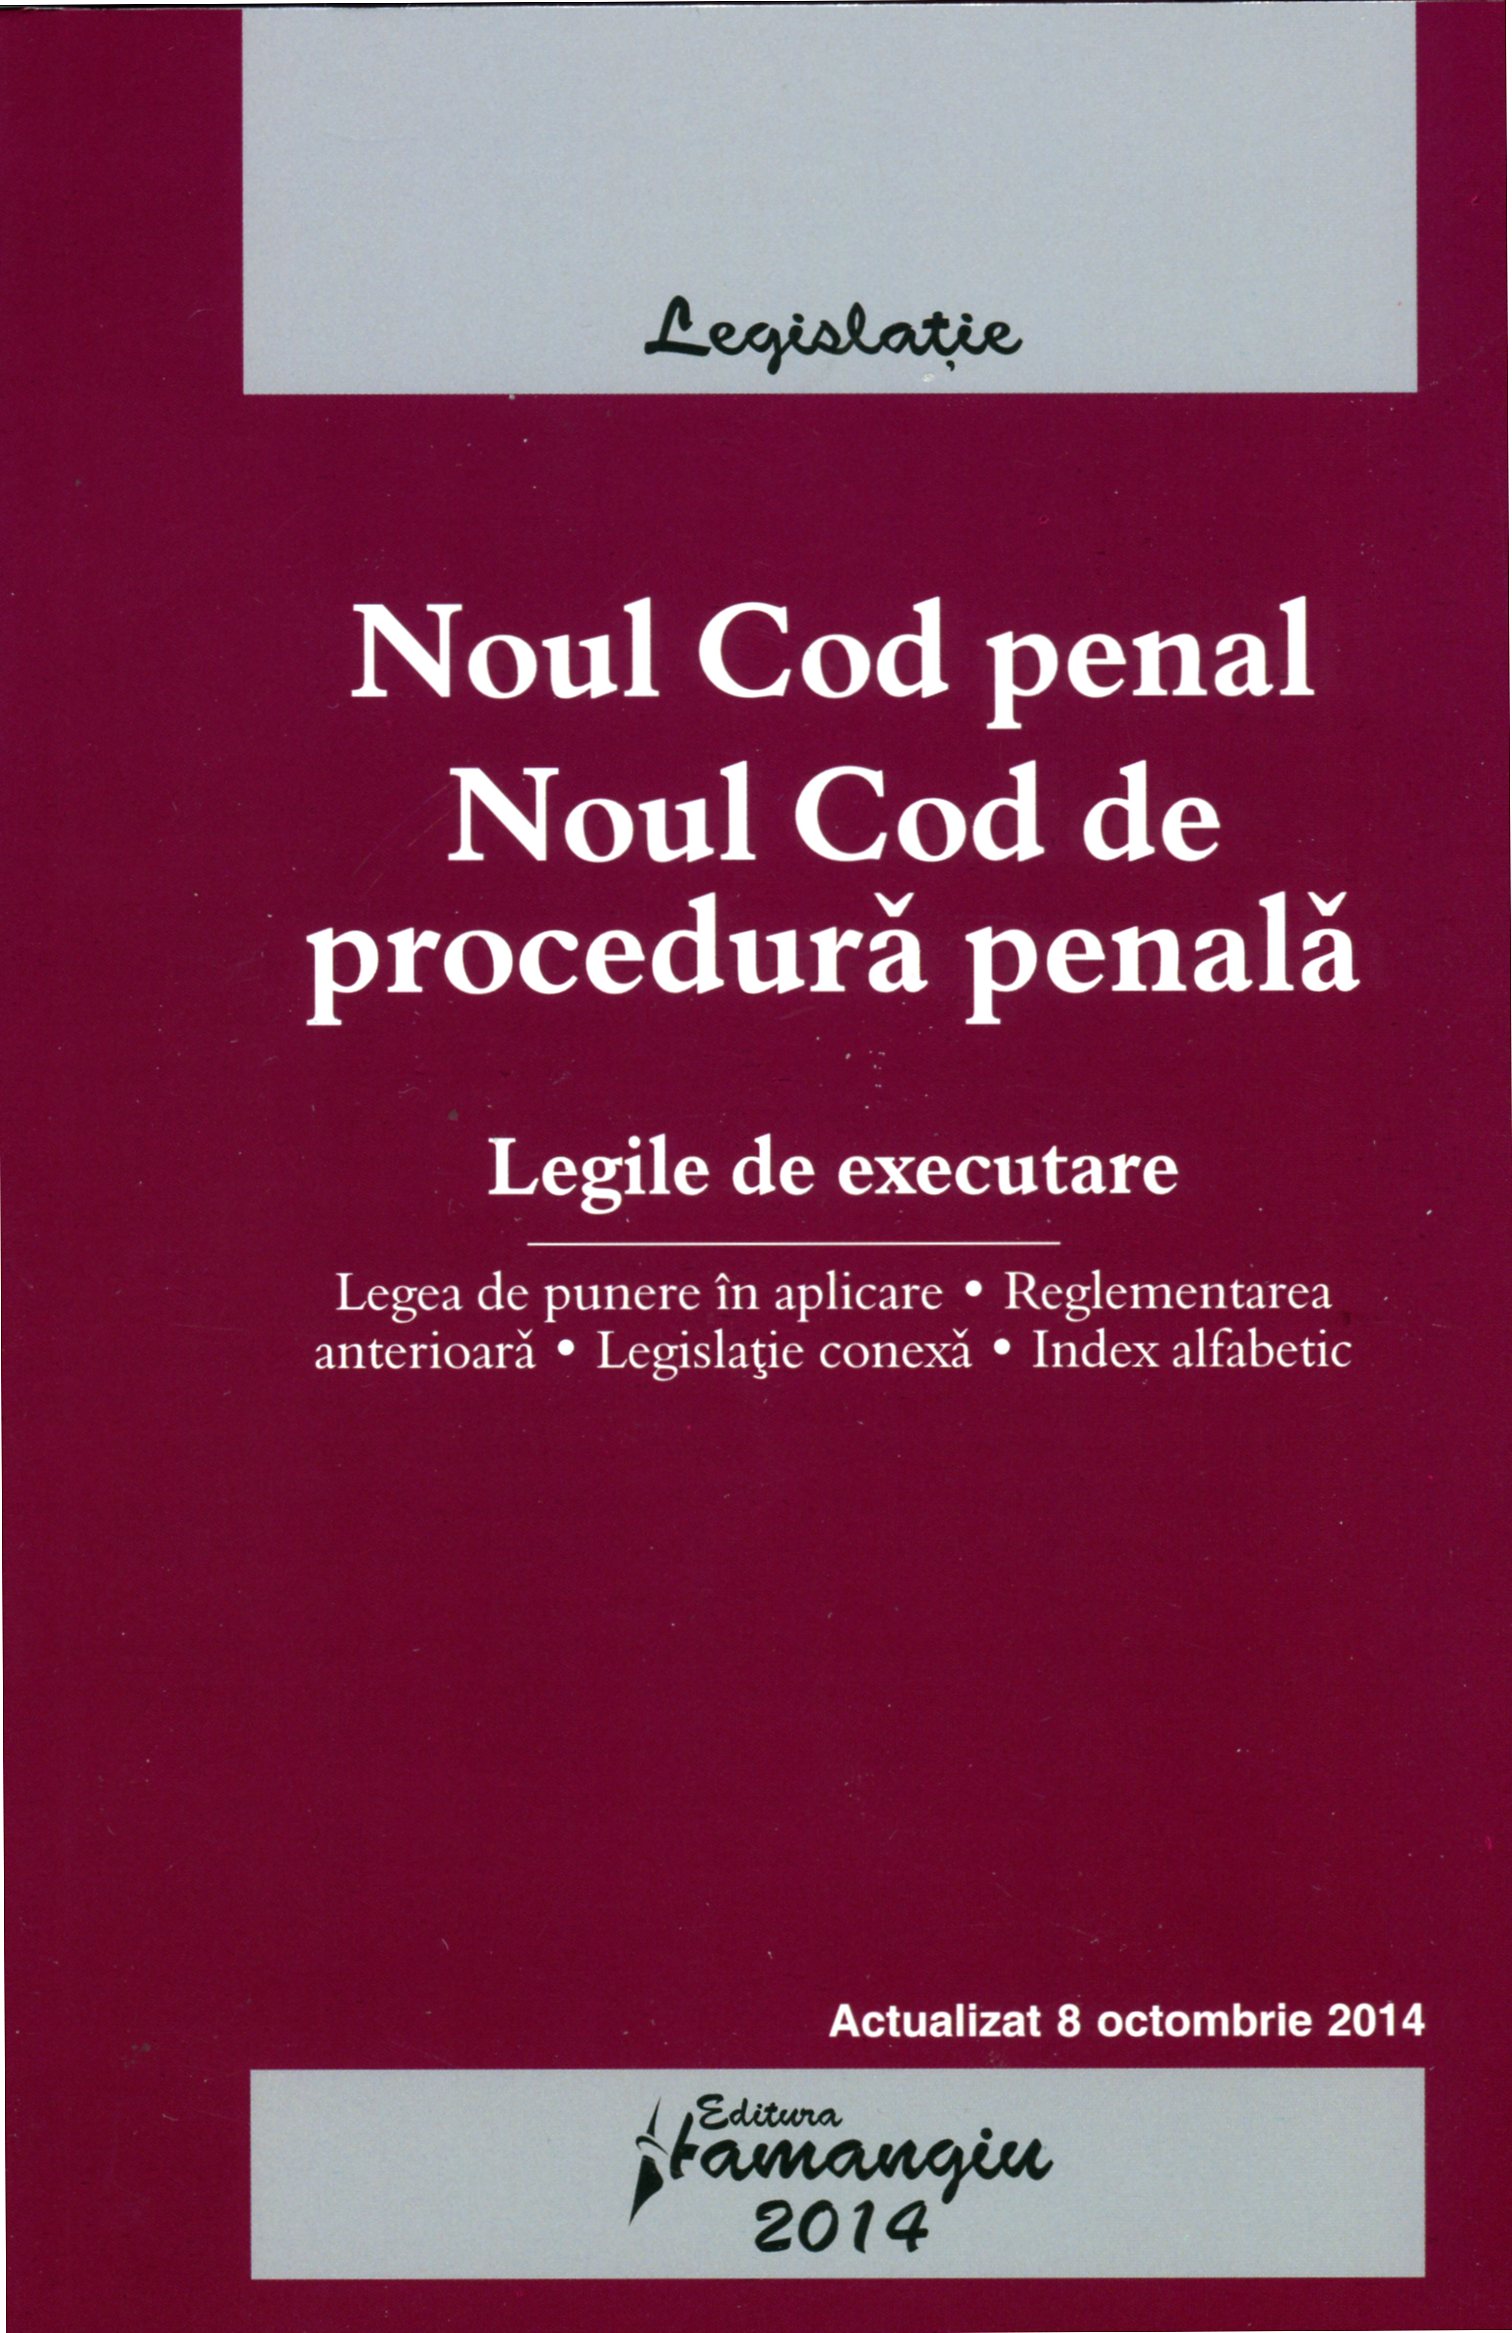 Noul Cod penal. Noul Cod de procedura penala act. 8 octombrie 2014